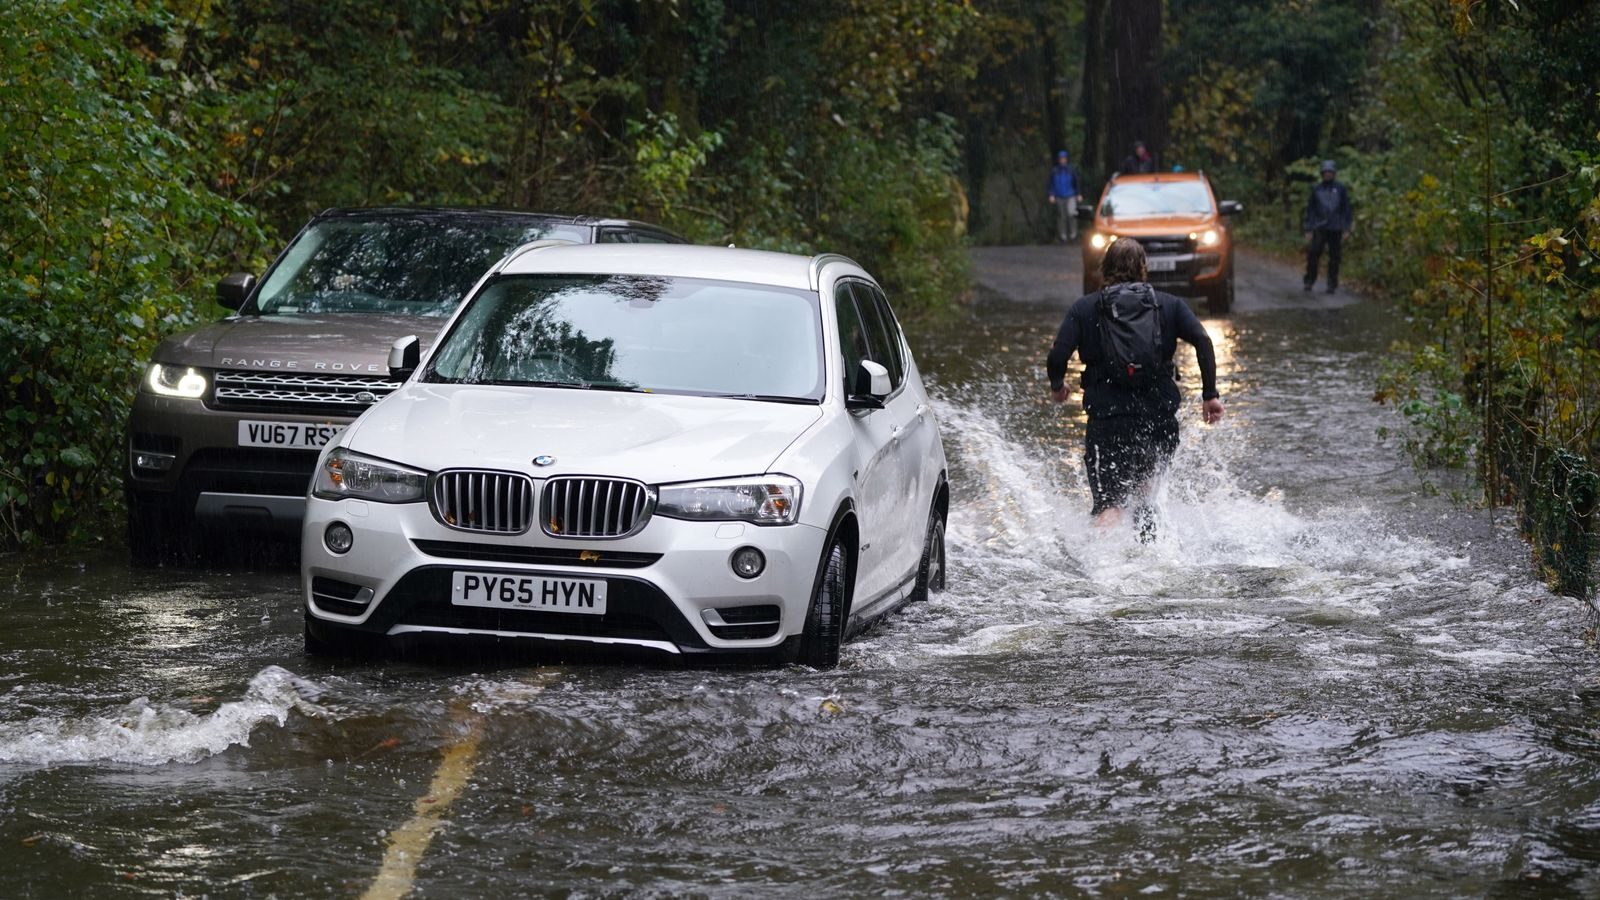 A broken-down car in floodwater near Derwentwater